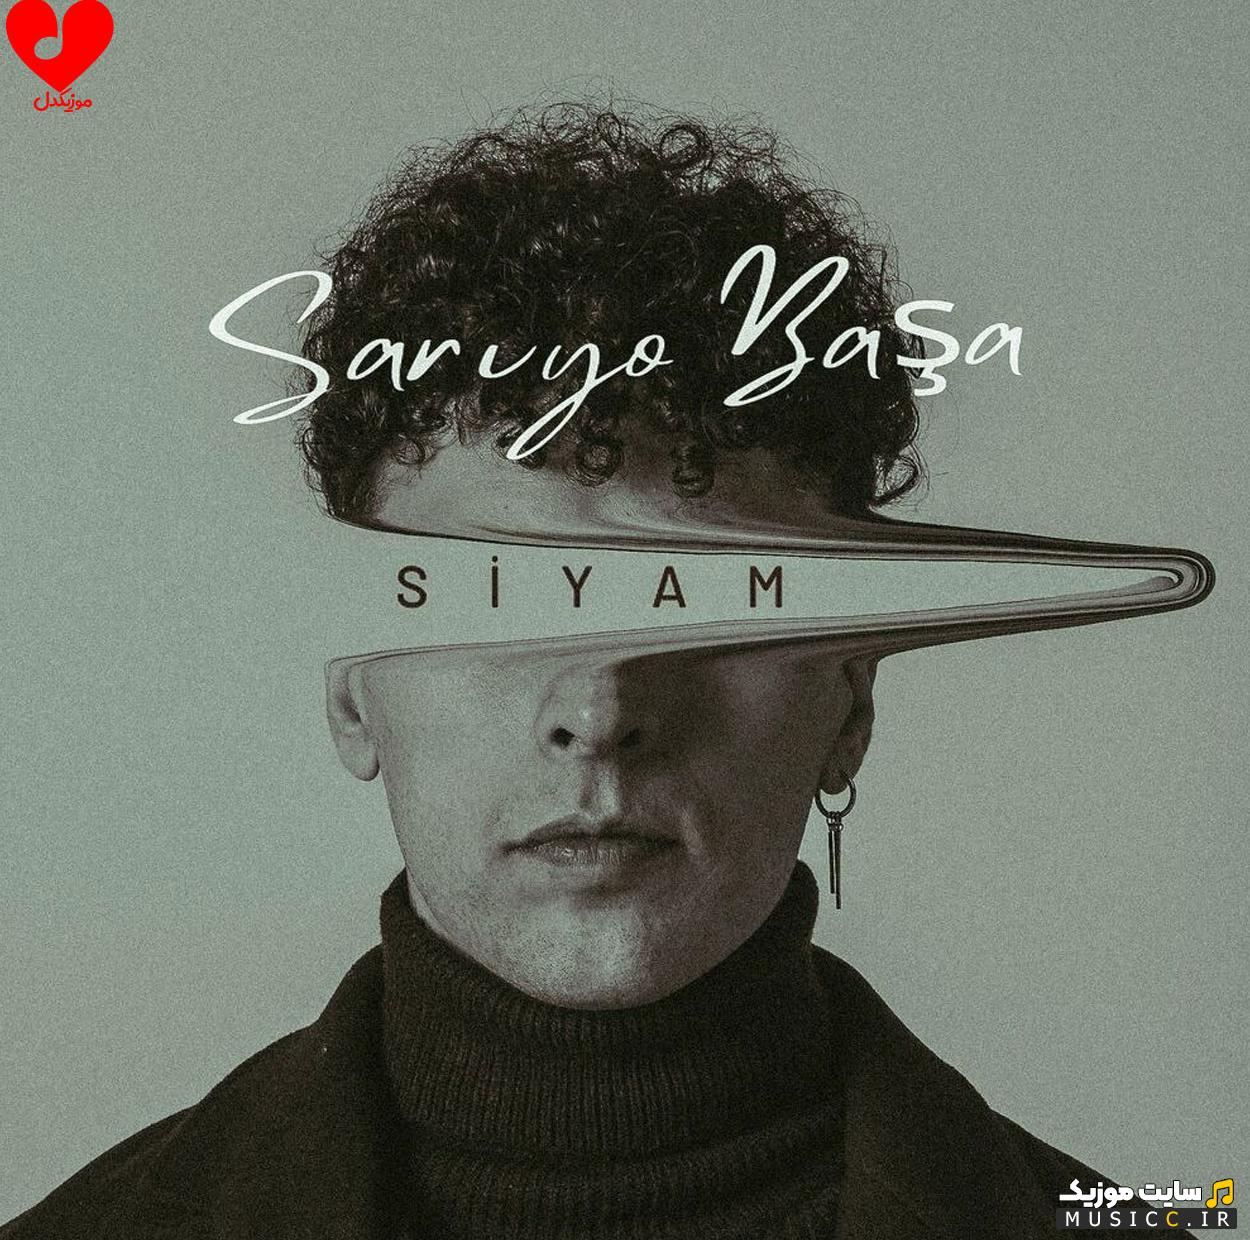 دانلود آهنگ ترکیه ای ساریو باشا (Sarıyo Başa)  از Siyam